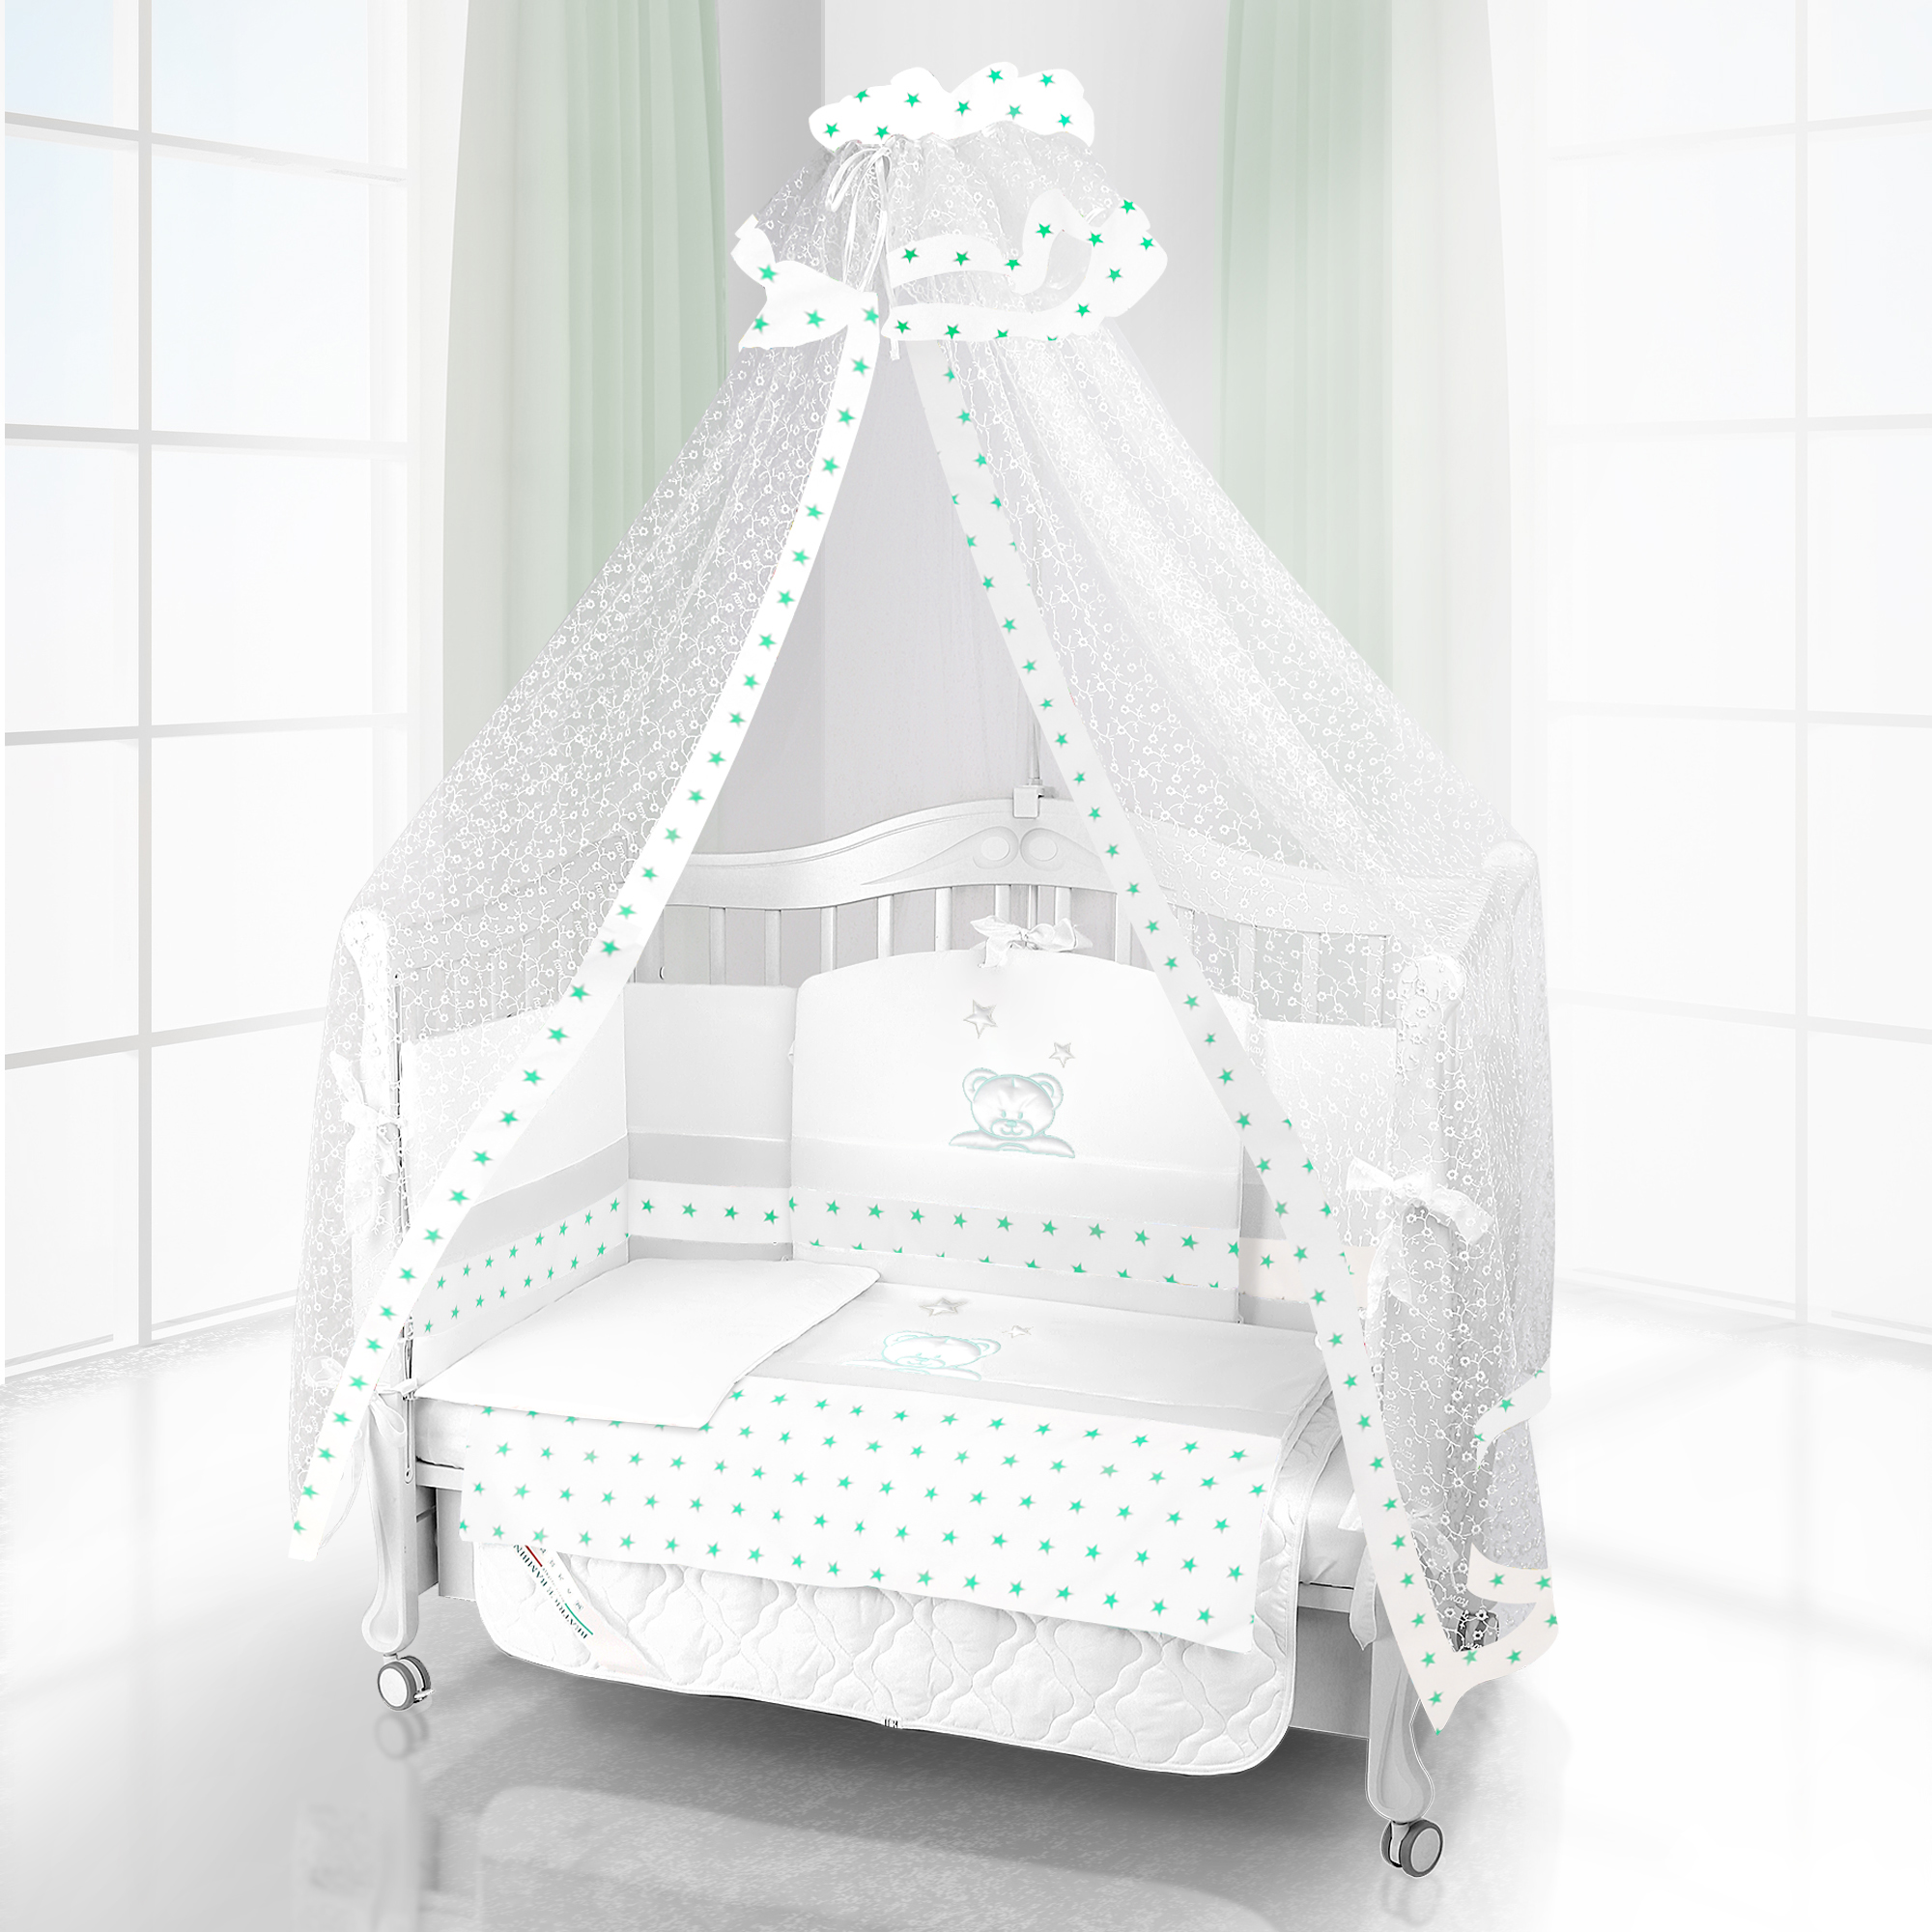 Комплект постельного белья Beatrice Bambini Unico Capolino (125х65) (bianco bianco verde)